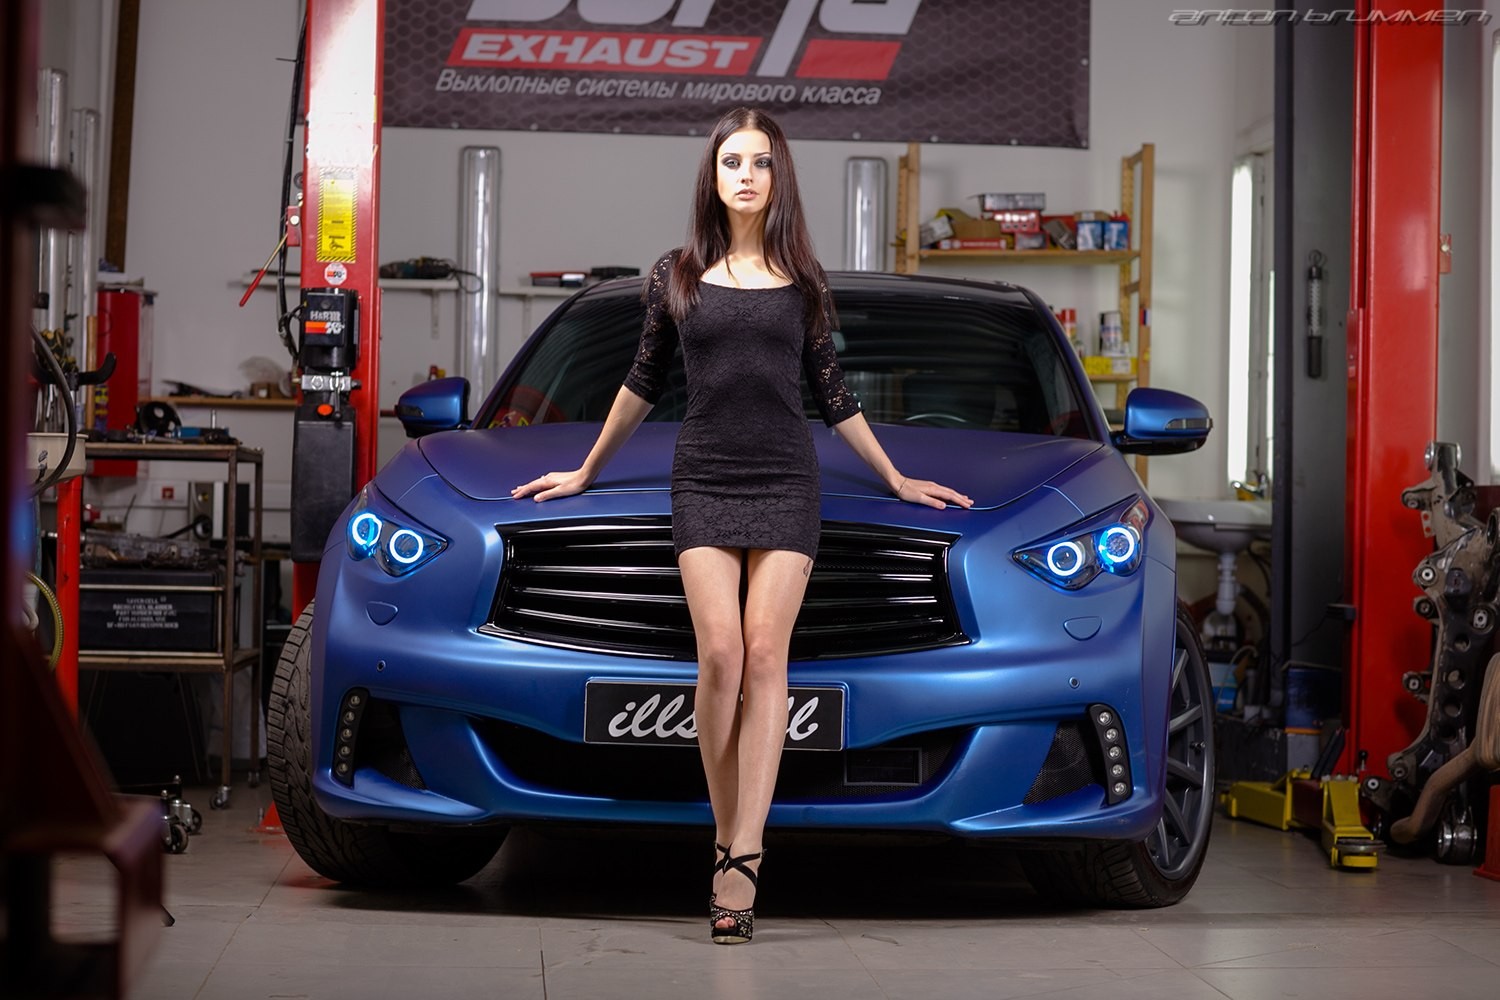 Alla Berger Women Model Garages Car Infiniti Black Dress Women With Cars Standing 1500x1000